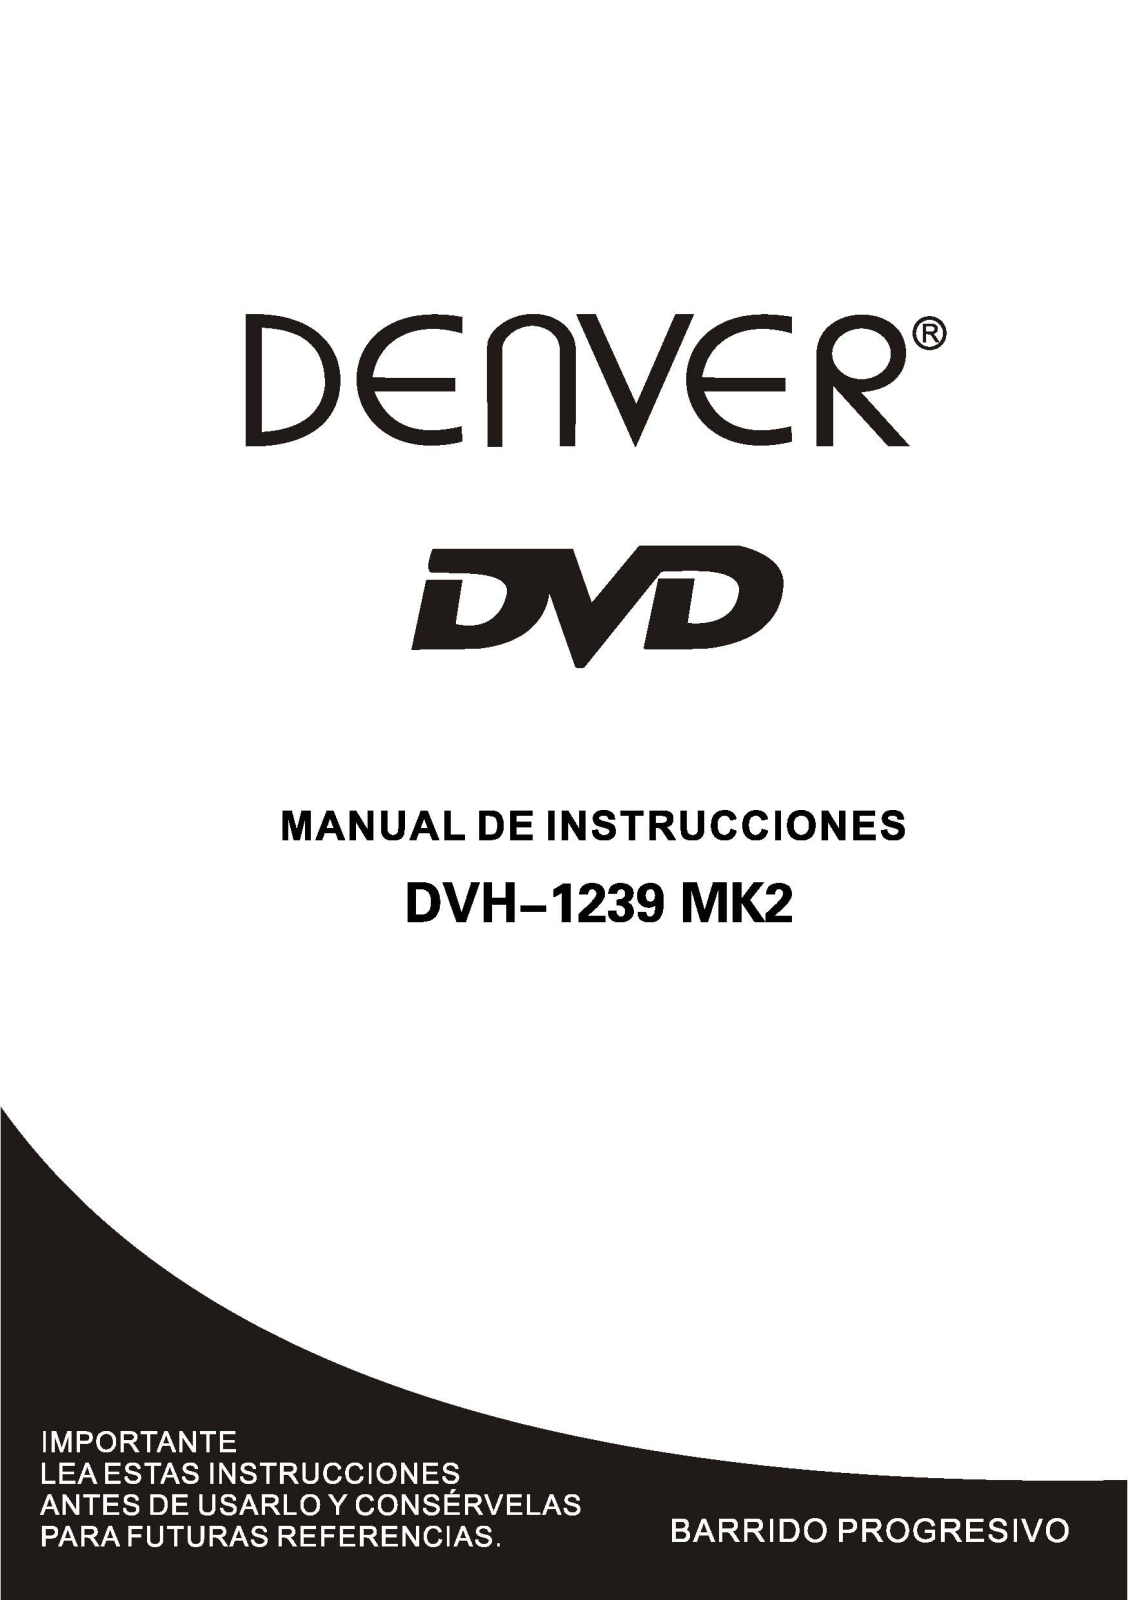 Denver DVH-1239 MK2 Instruction Manual